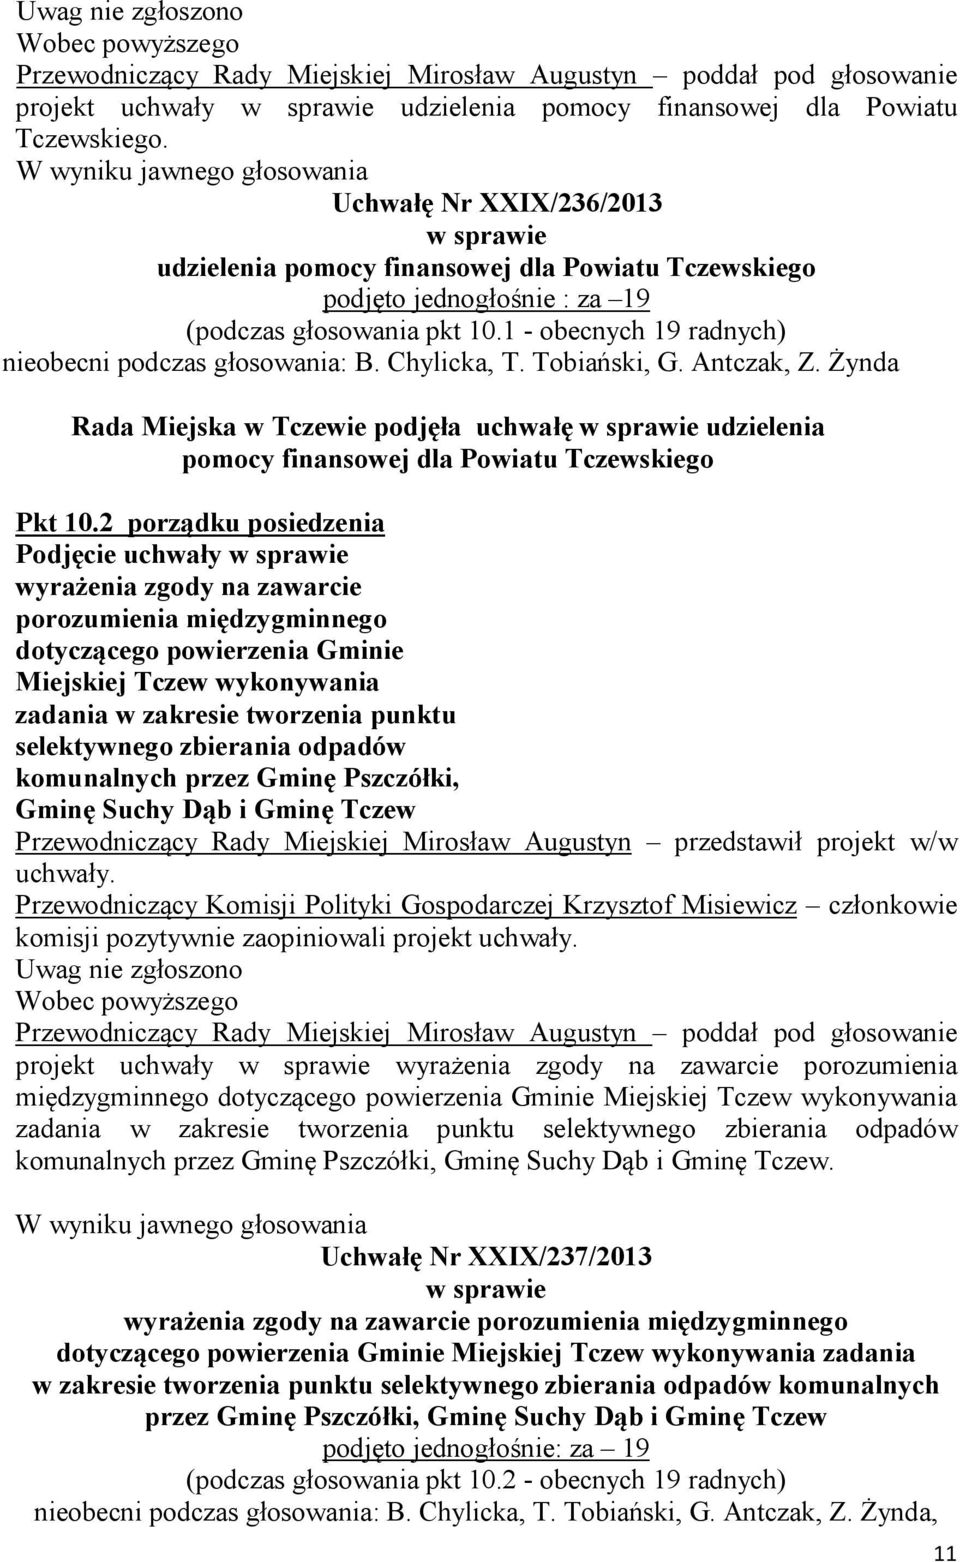 1 - obecnych 19 radnych) nieobecni podczas głosowania: B. Chylicka, T. Tobiański, G. Antczak, Z.